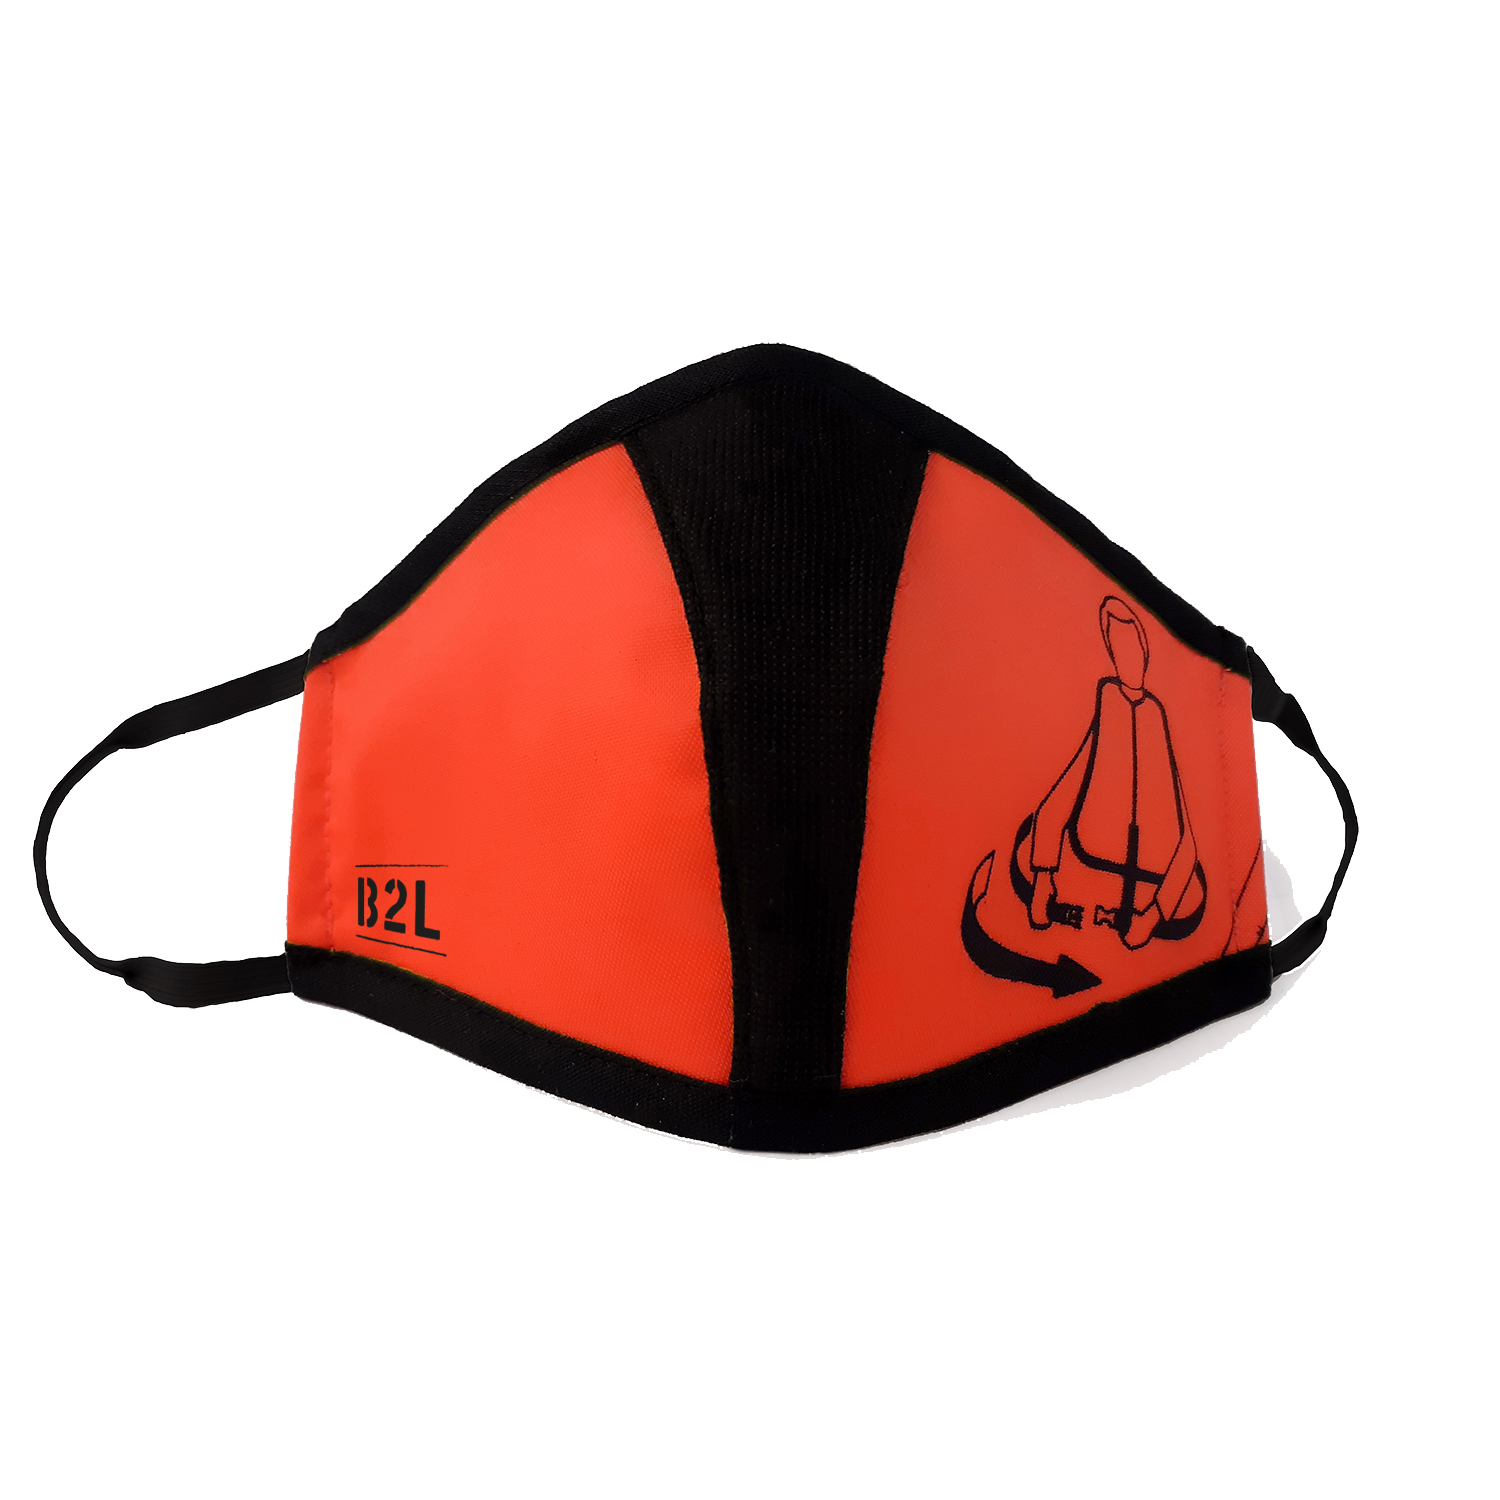 Travel Safe Mask red-orange 10er Pack – Gesichtsmasken 